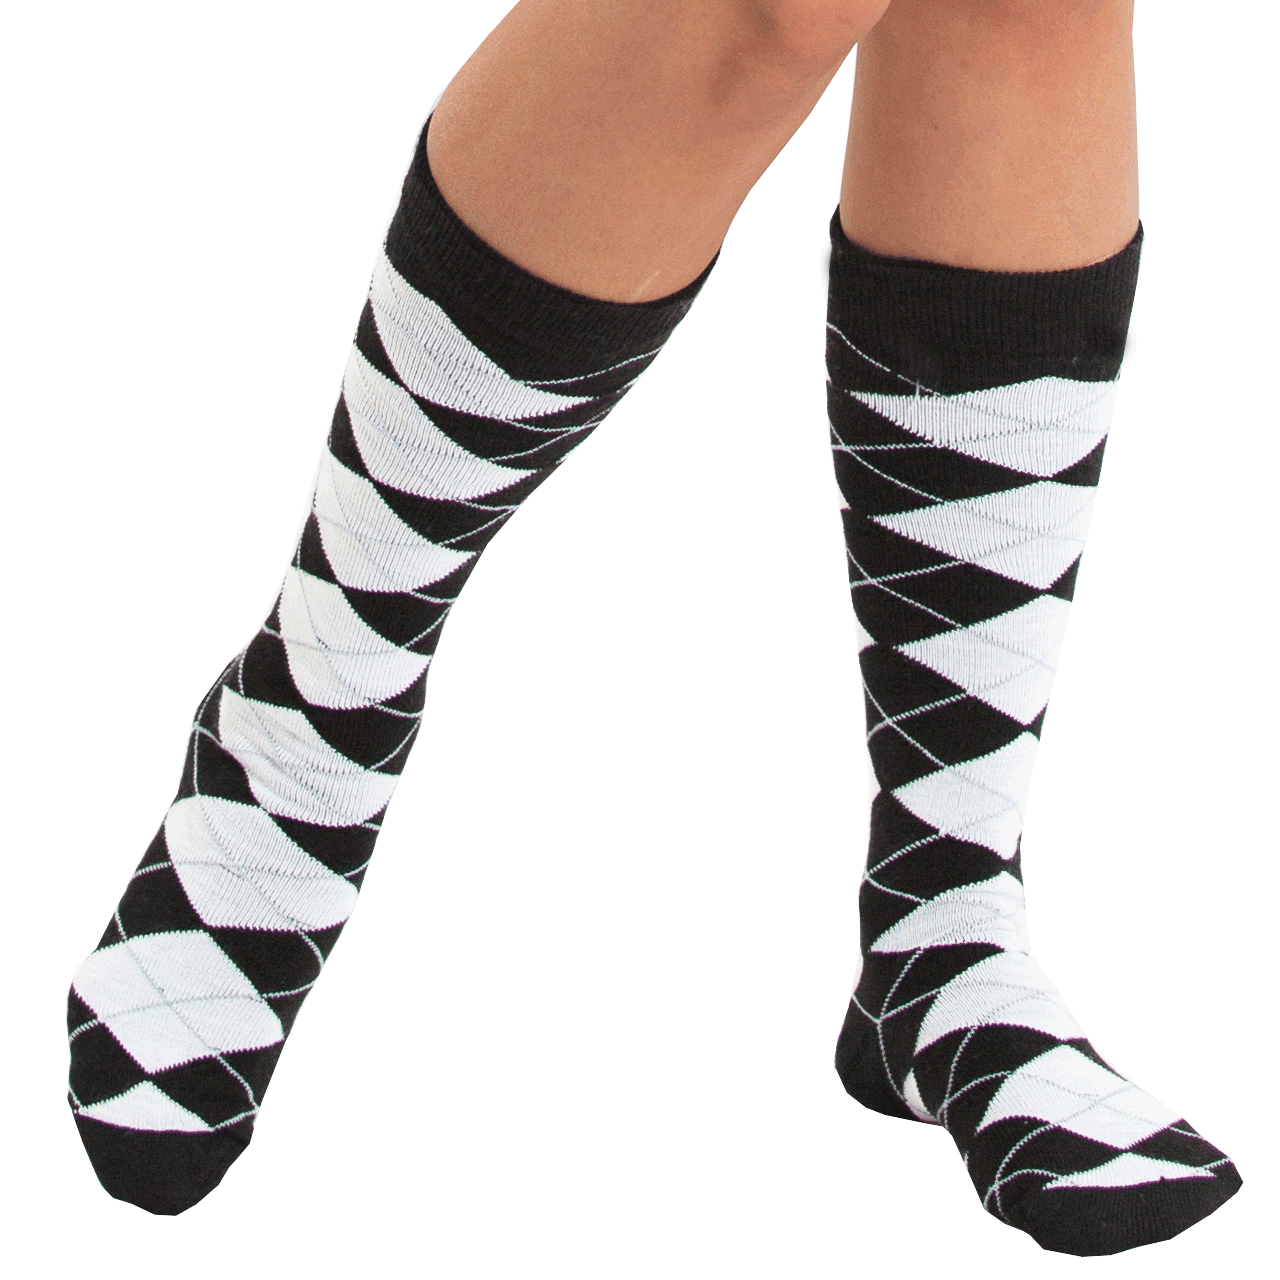 Black/White Argyle Socks